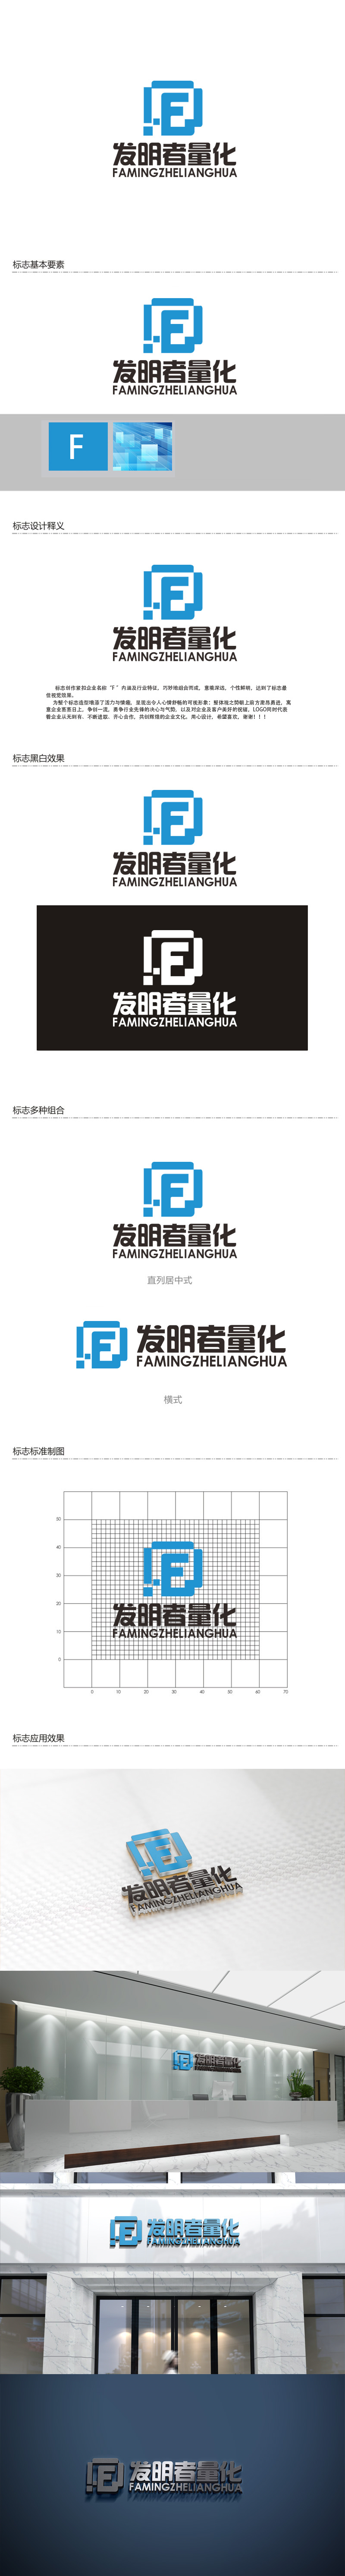 秦晓东的发明者量化logo设计